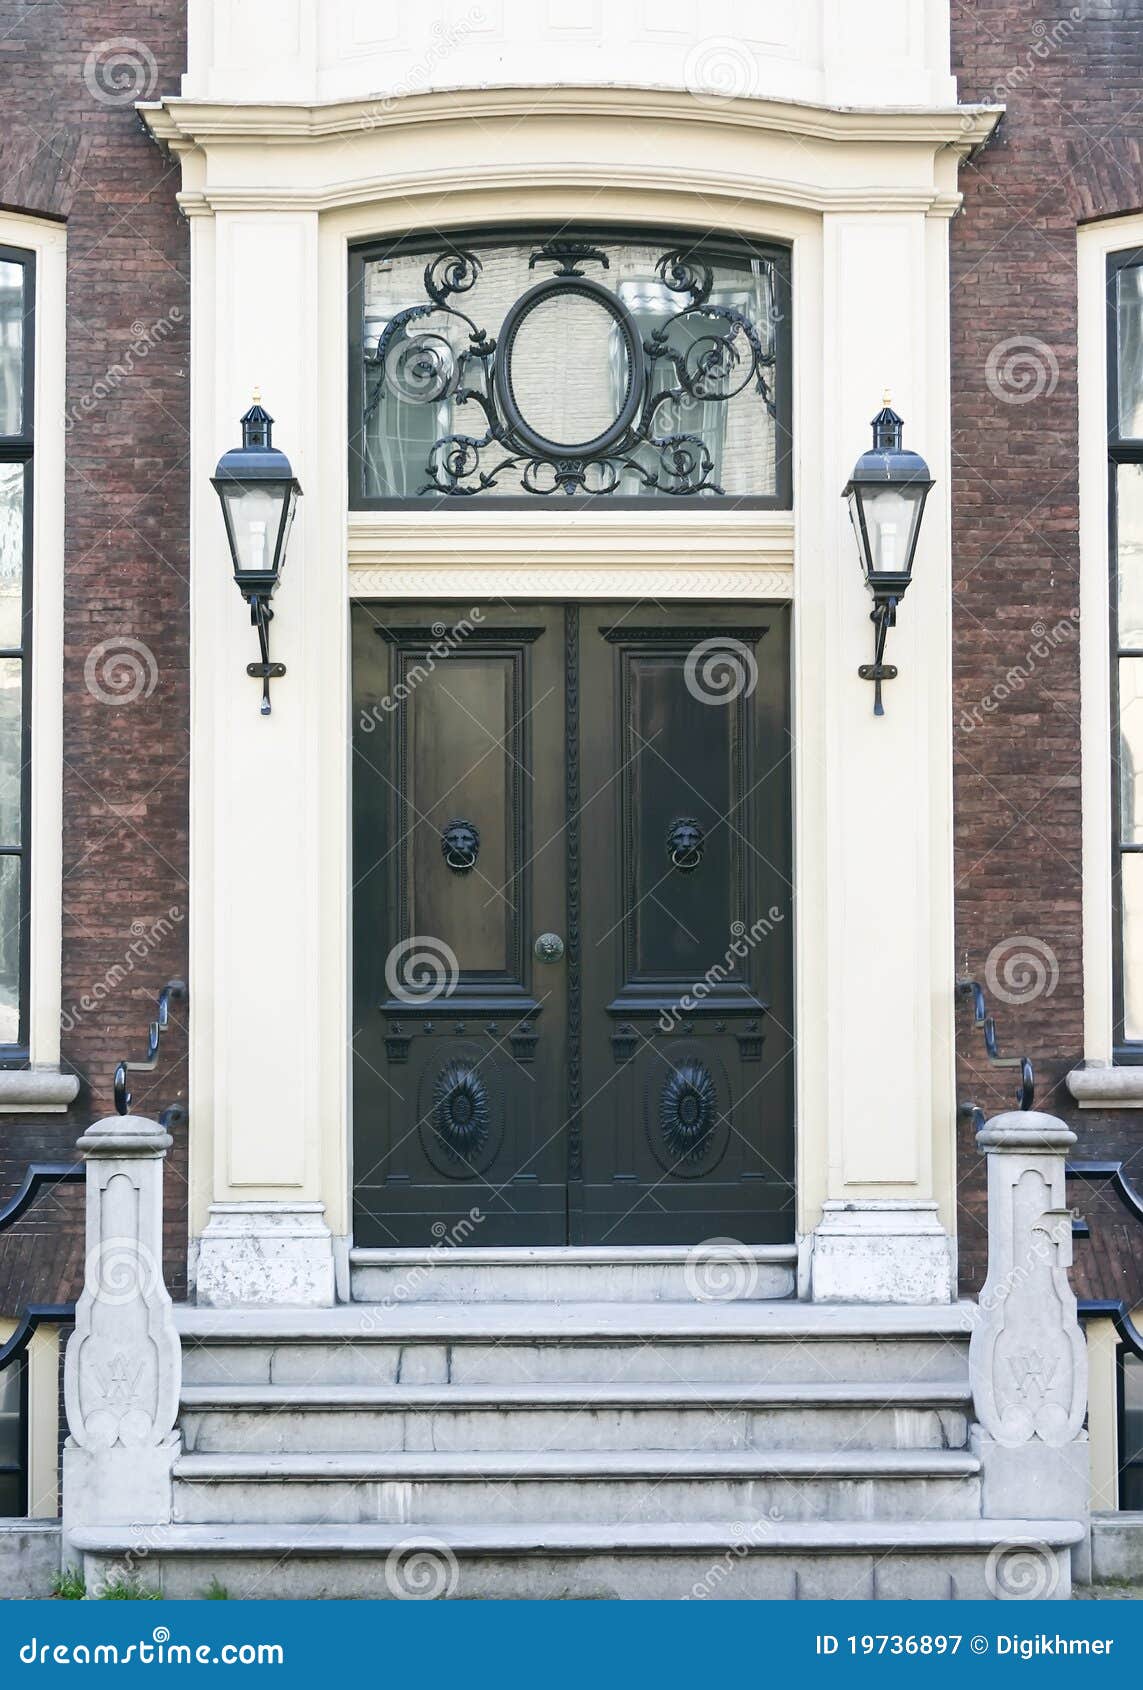 townhouse entrance door